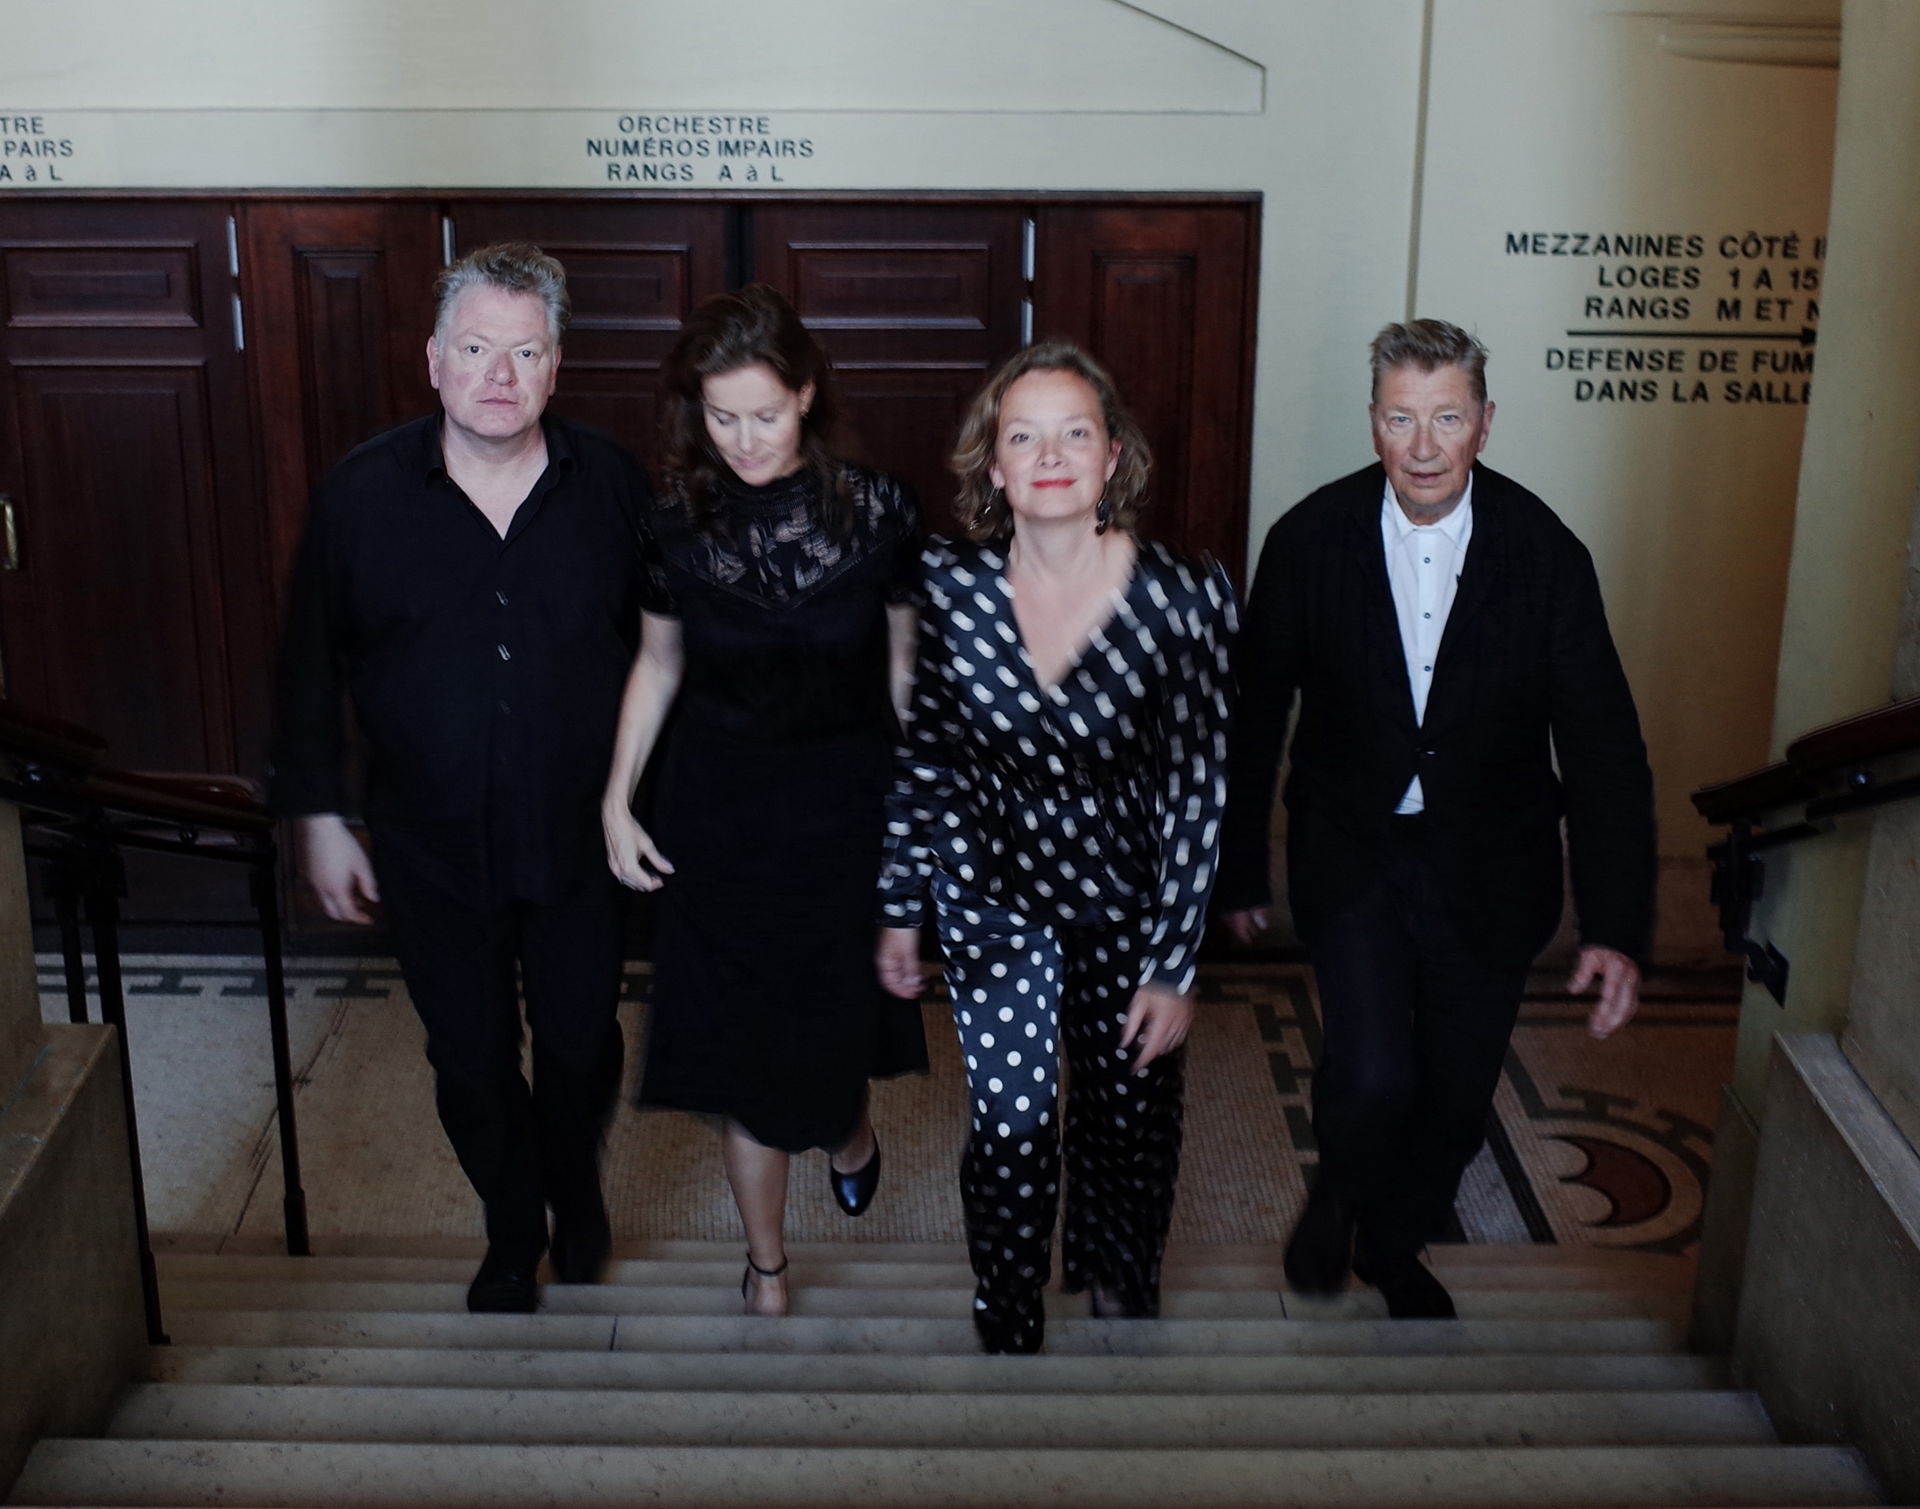 Het Avalanche Quartet, bestaande uit Henk Hofstede, Marjolein van der Klauw, Arwen Linnemann en Pim Kops, brengt een nieuw theaterprogramma rondom het werk van de legendarische Leonard Cohen. 